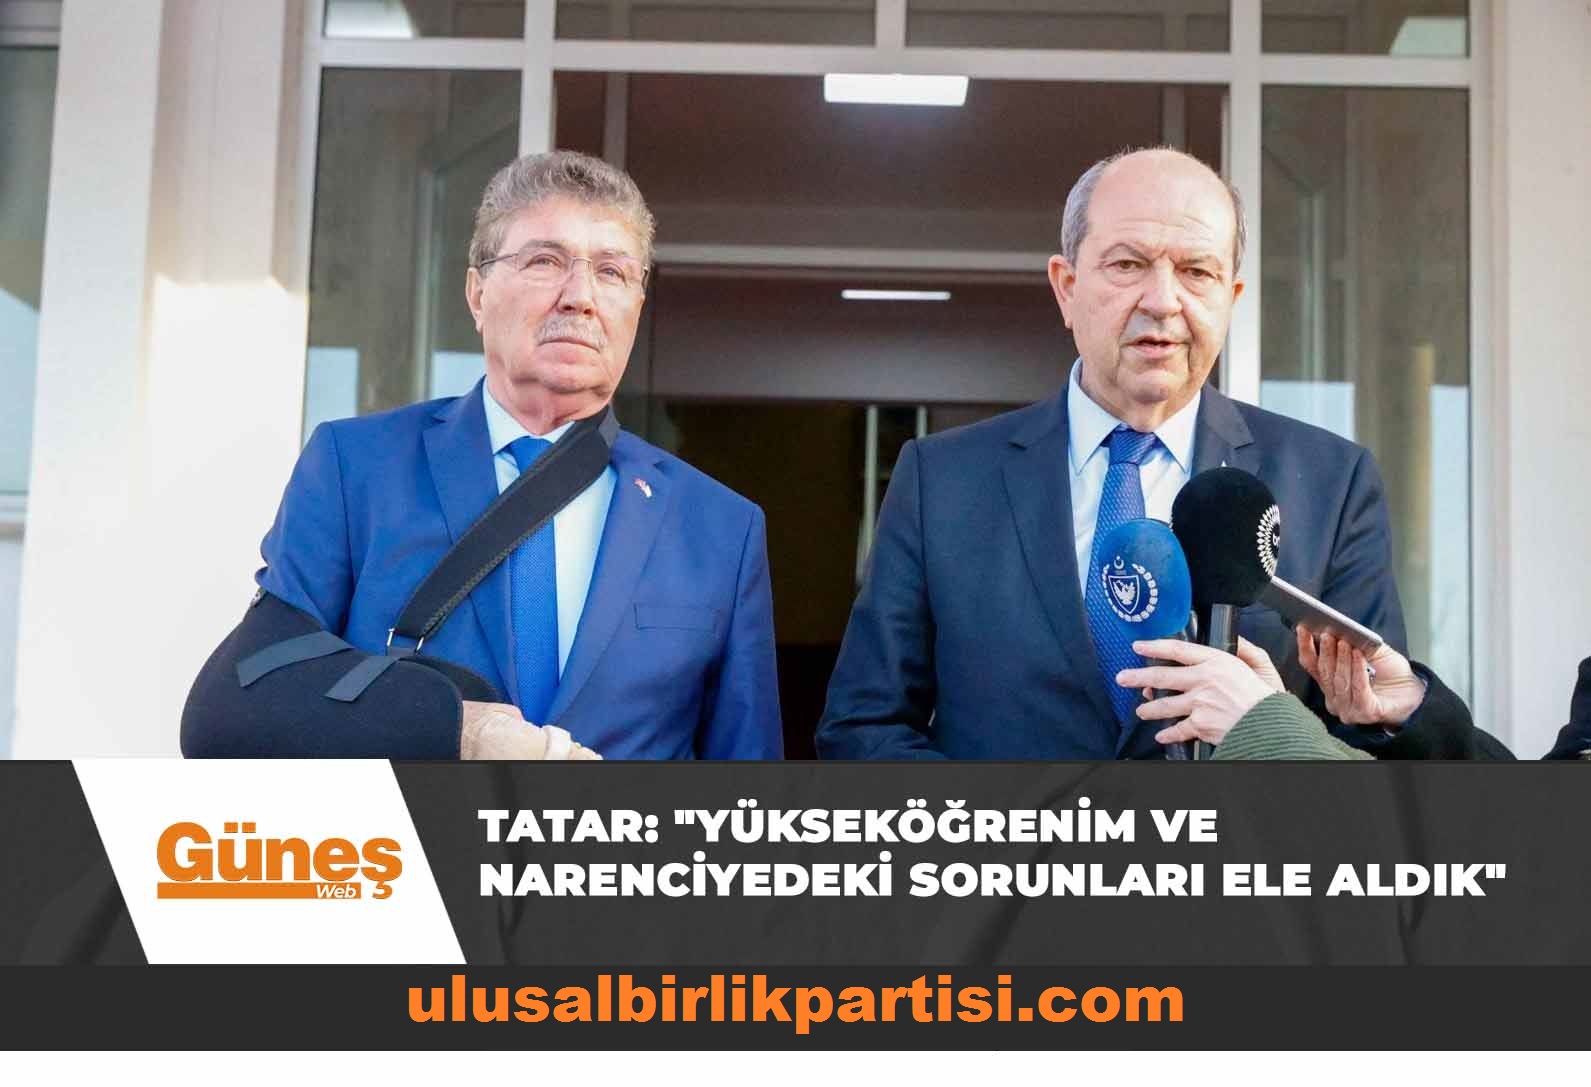 You are currently viewing Cumhurbaşkanı Tatar, Bakanlar Kurulu sonrası açıklamada bulundu: “Yükseköğrenim ve narenciyedeki sorunları ele aldık”